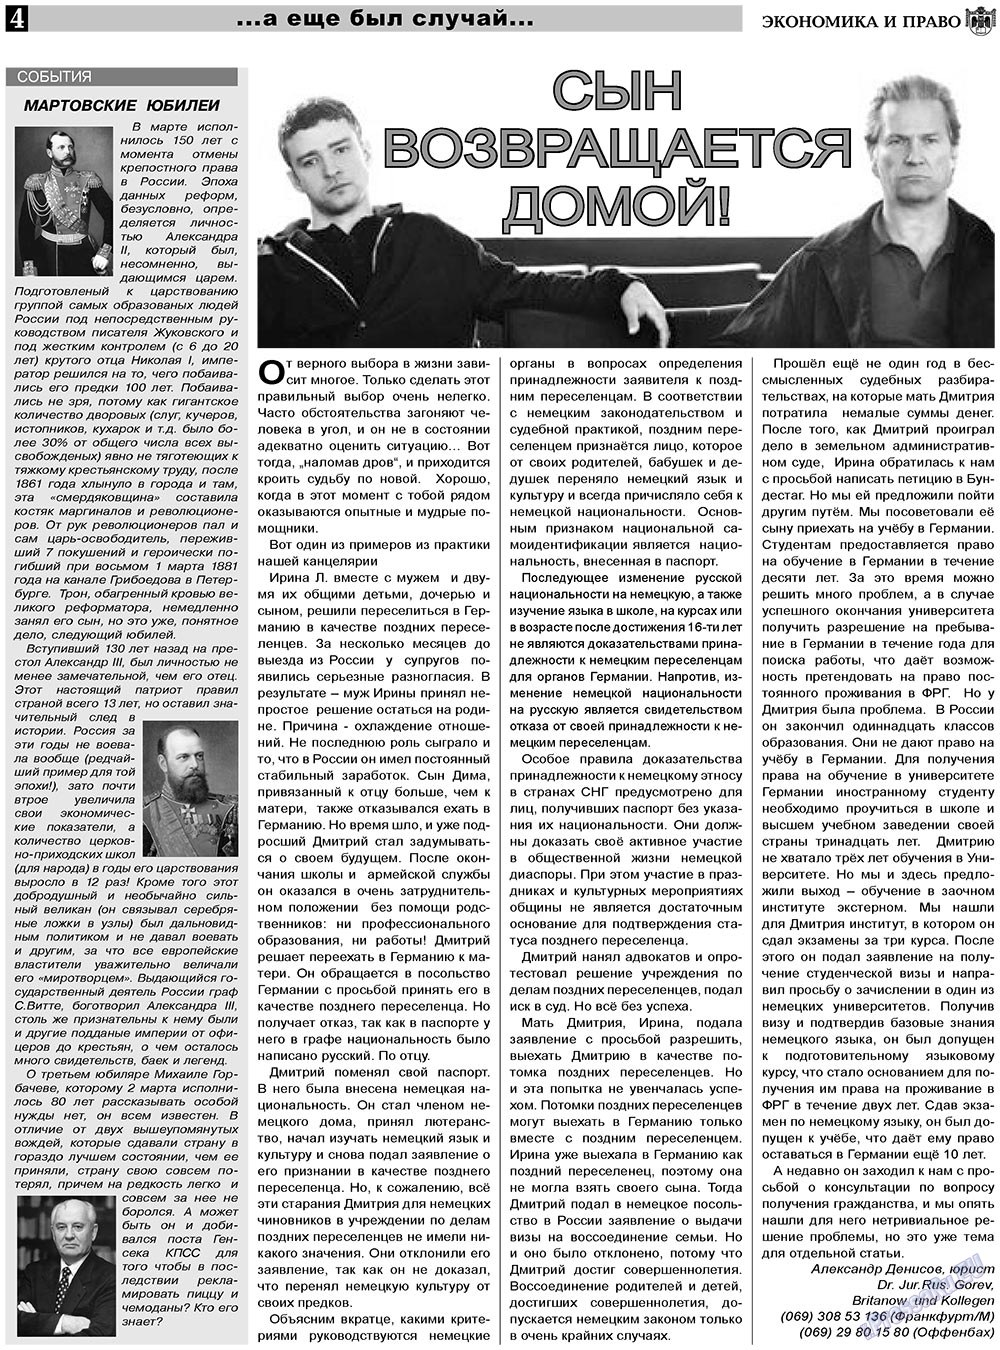 Экономика и право, газета. 2011 №4 стр.4